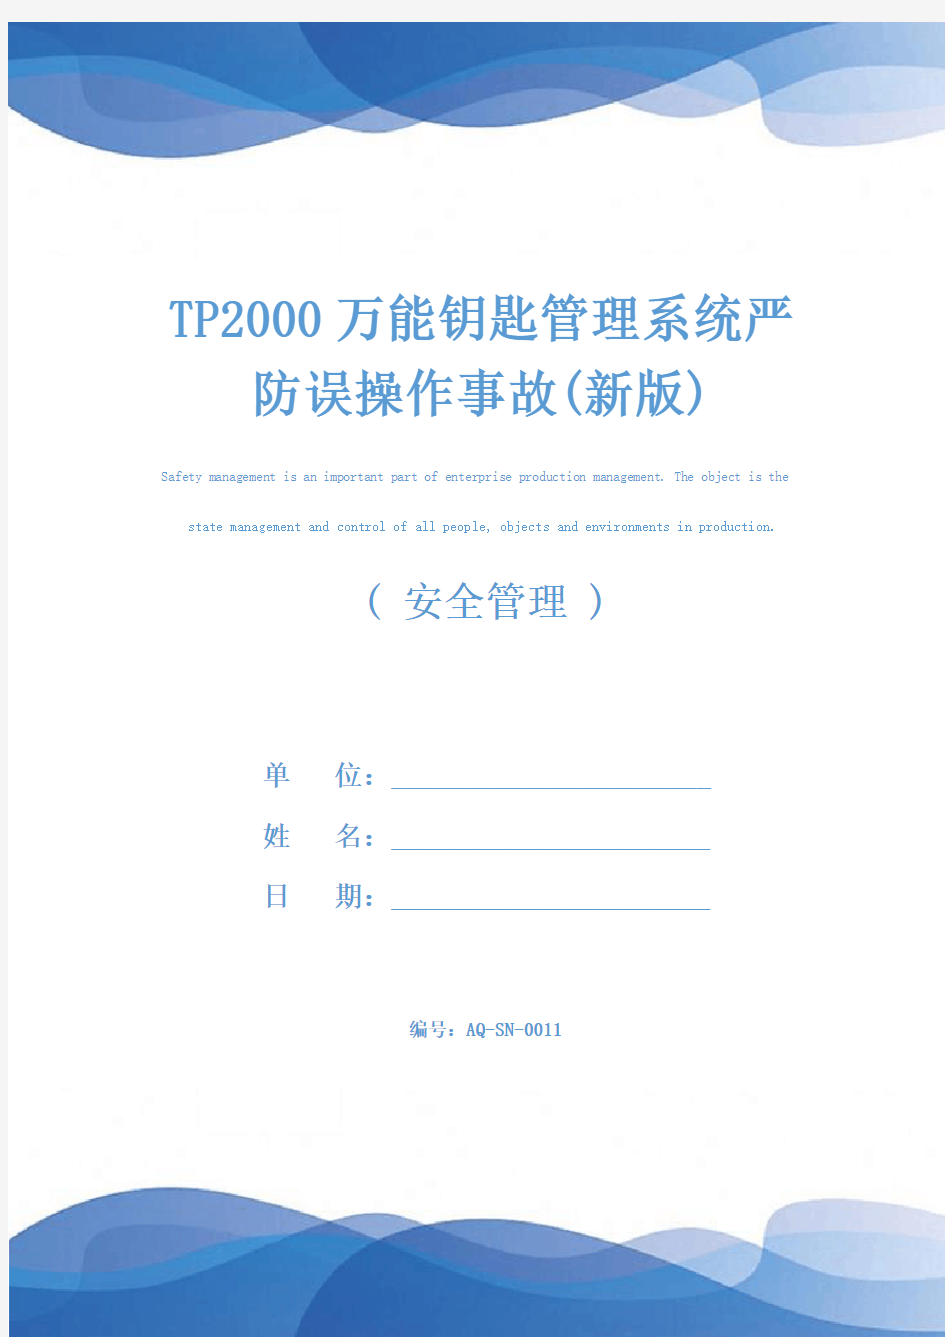 TP2000万能钥匙管理系统严防误操作事故(新版)